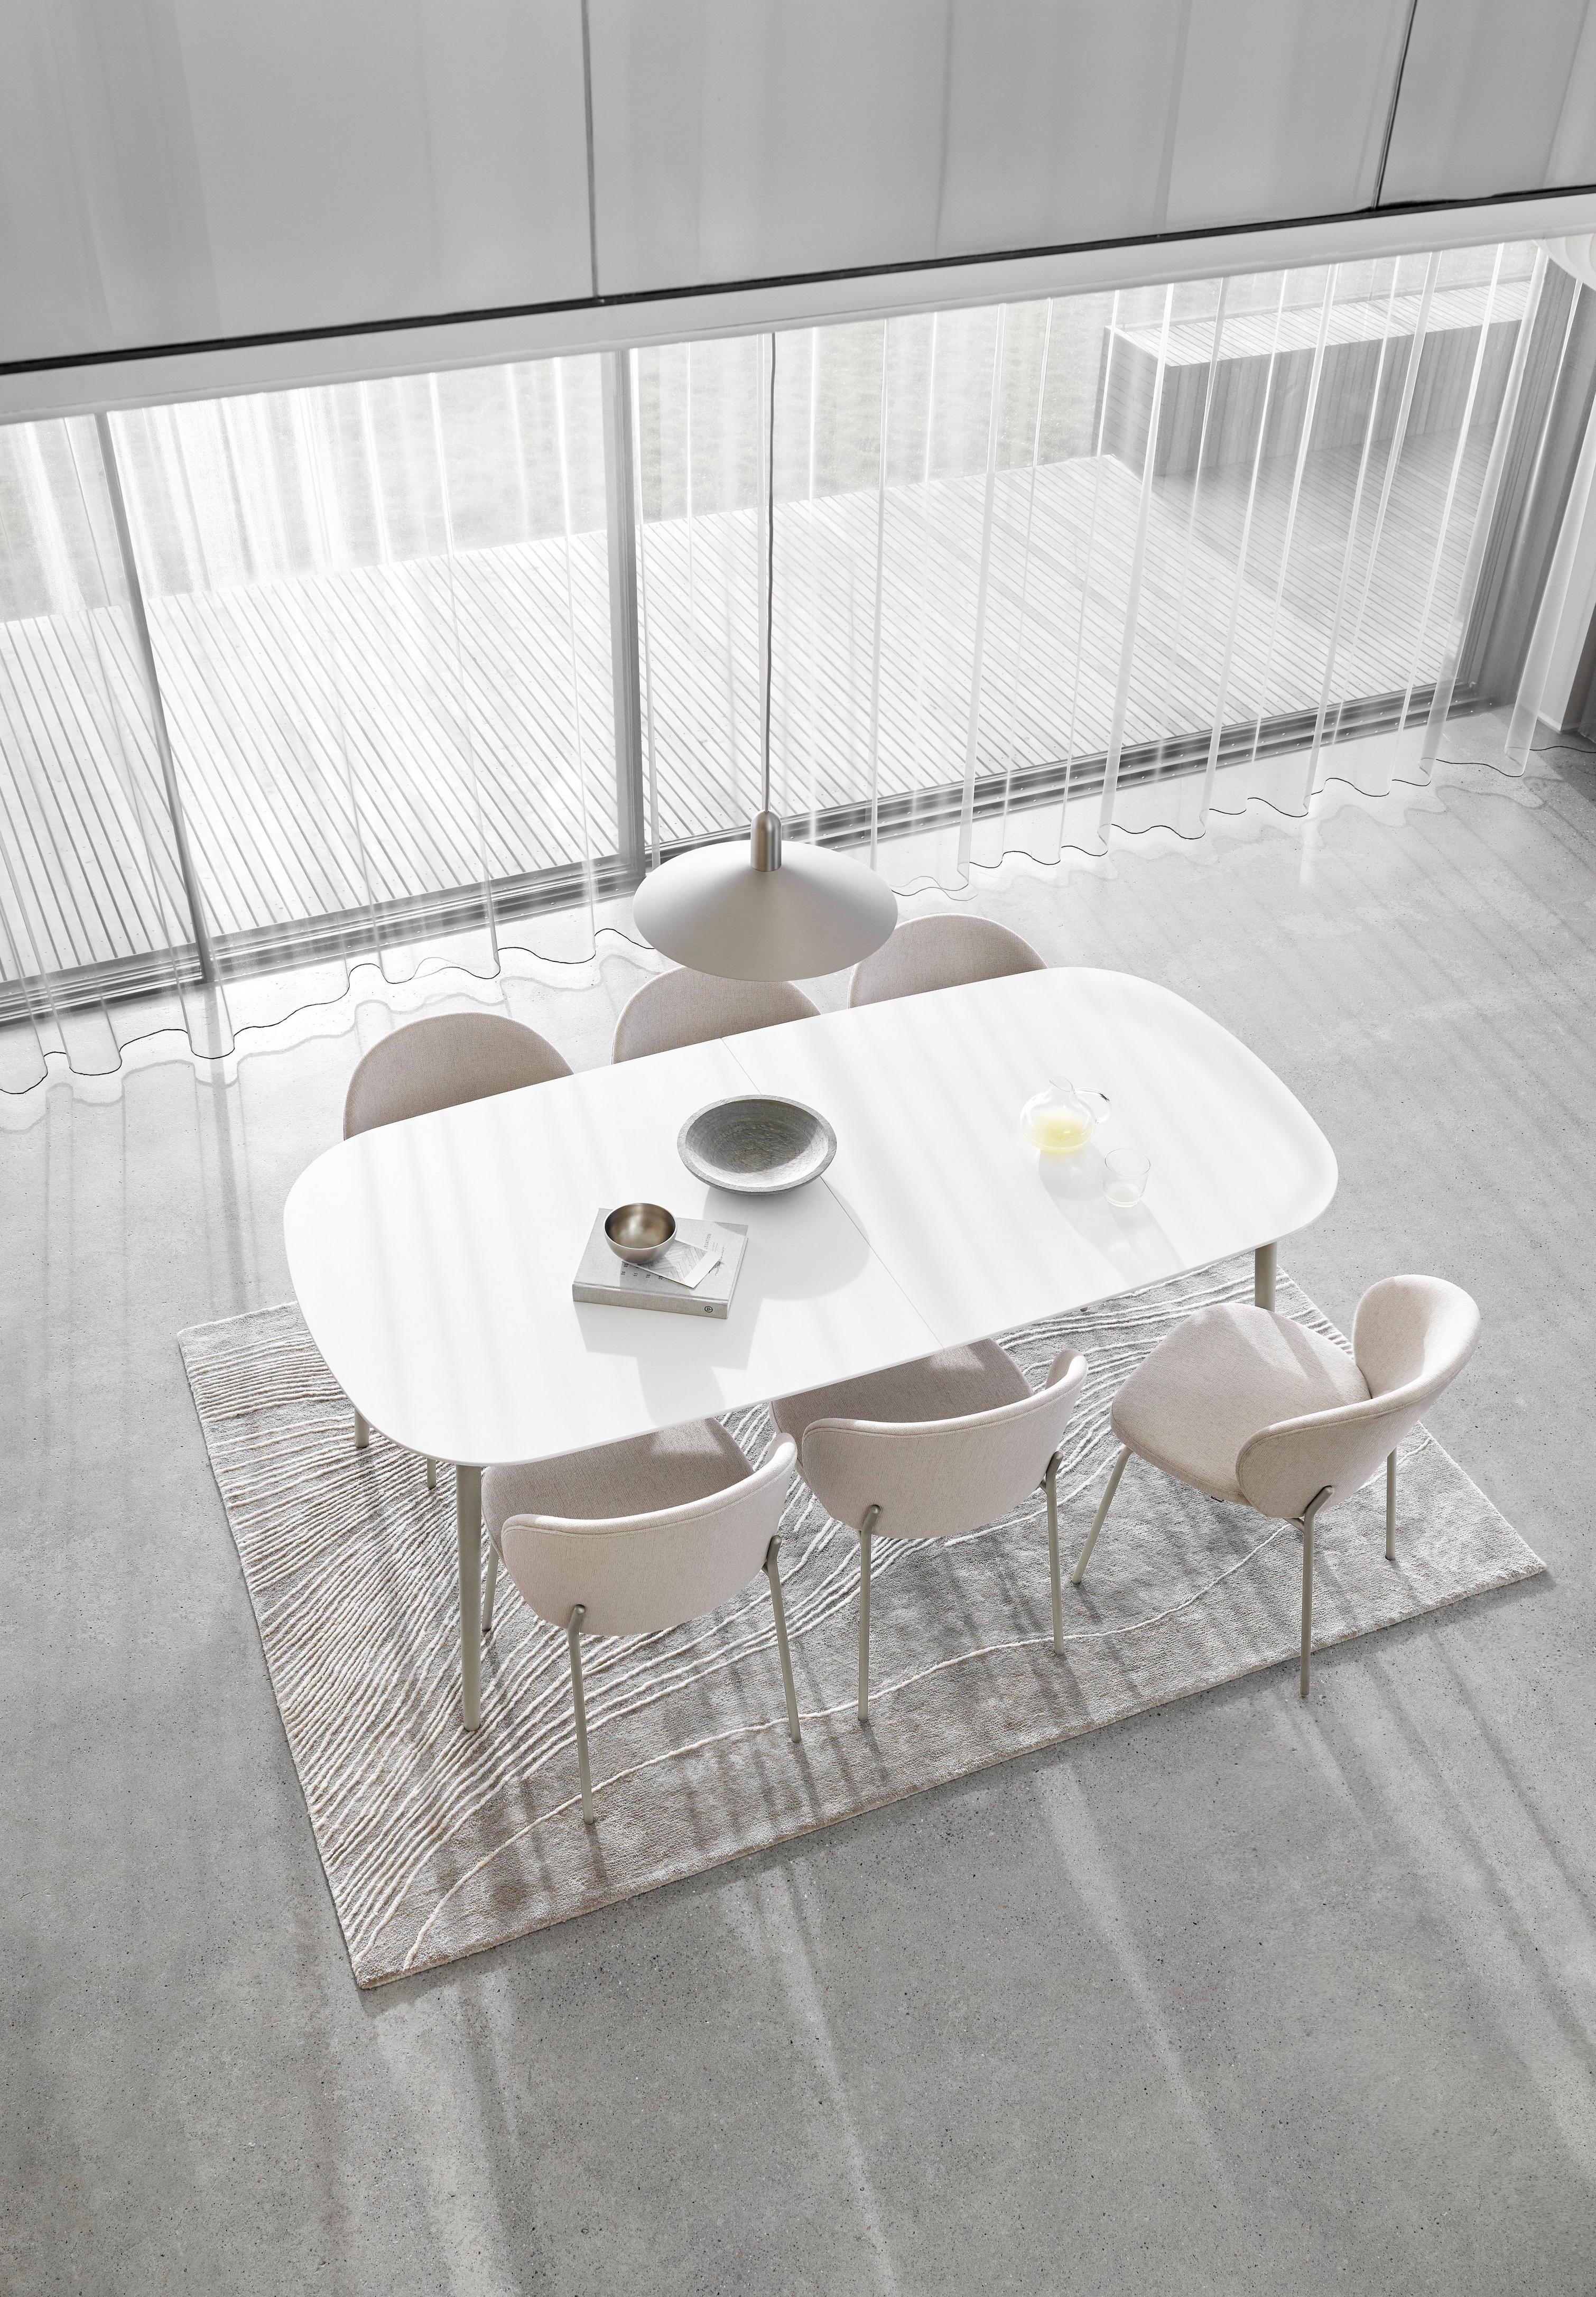 Minimalistischer Esszimmer-Bereich mit weißem ovalem Tisch, Stühlen, transparenten Vorhängen und strukturiertem Teppich.